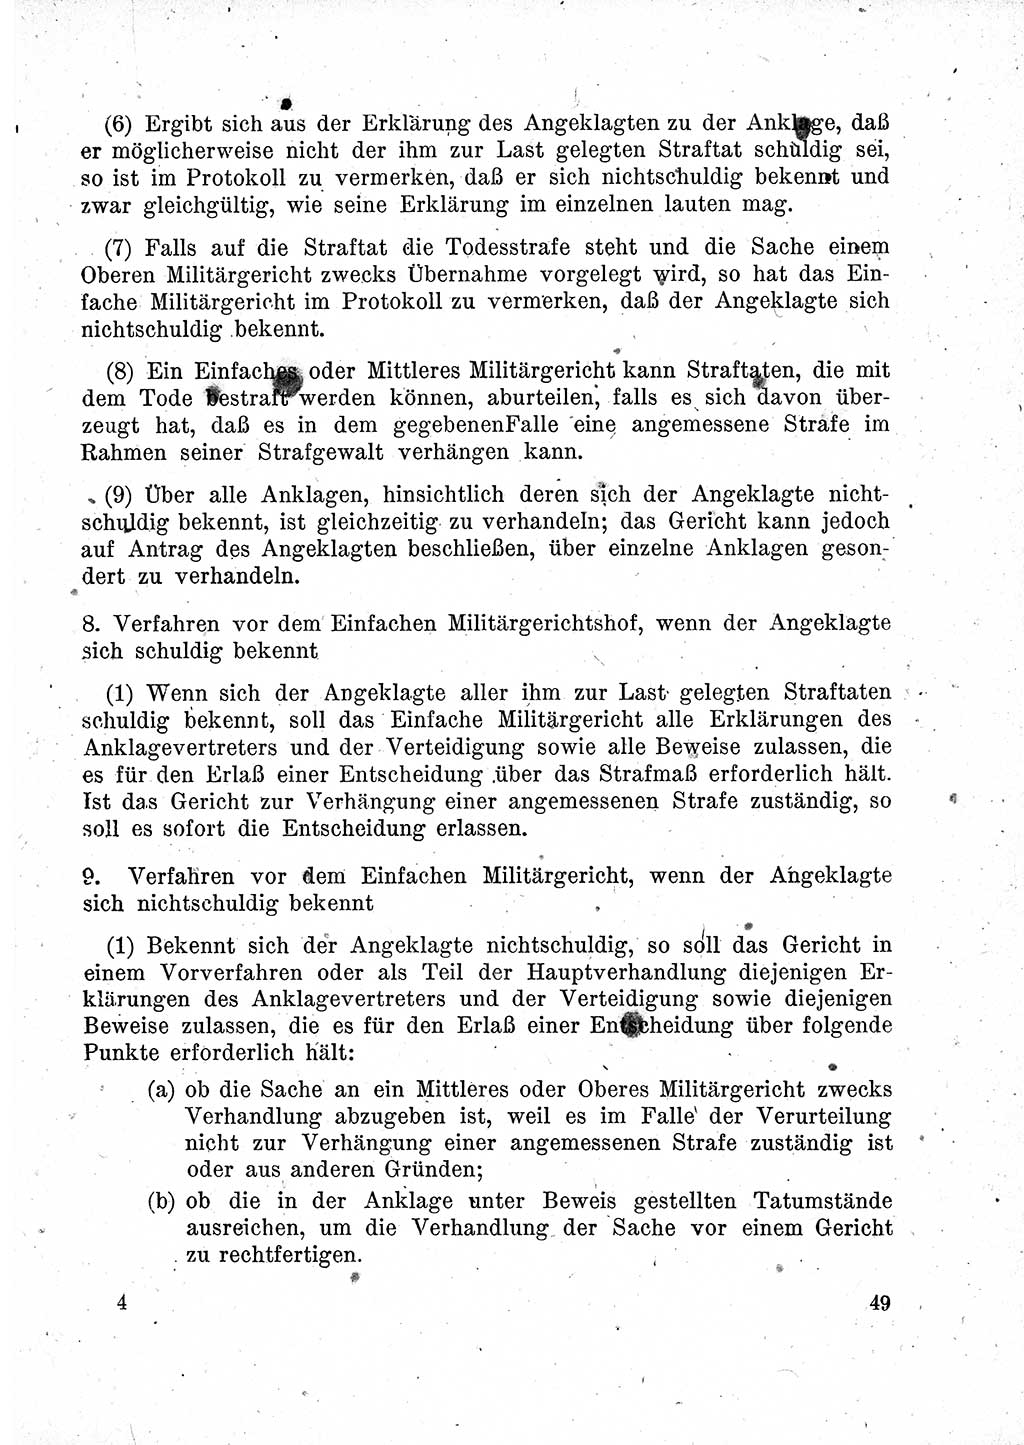 Das Recht der Besatzungsmacht (Deutschland), Proklamationen, Deklerationen, Verordnungen, Gesetze und Bekanntmachungen 1947, Seite 49 (R. Bes. Dtl. 1947, S. 49)